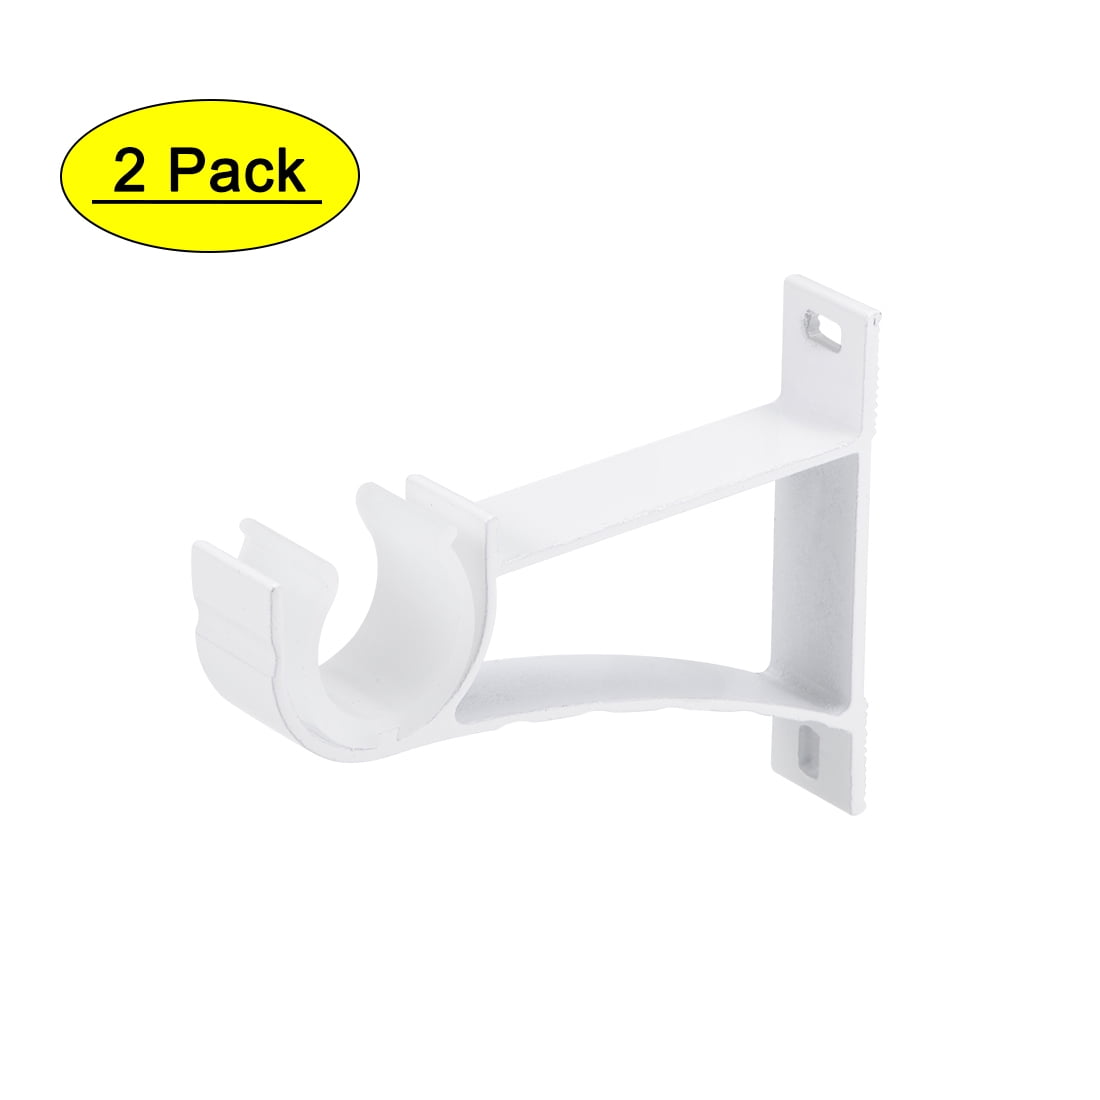 10 x Small Aluminum Alloy 0.75Inch Freezer Shelf Support Hook Brackets 